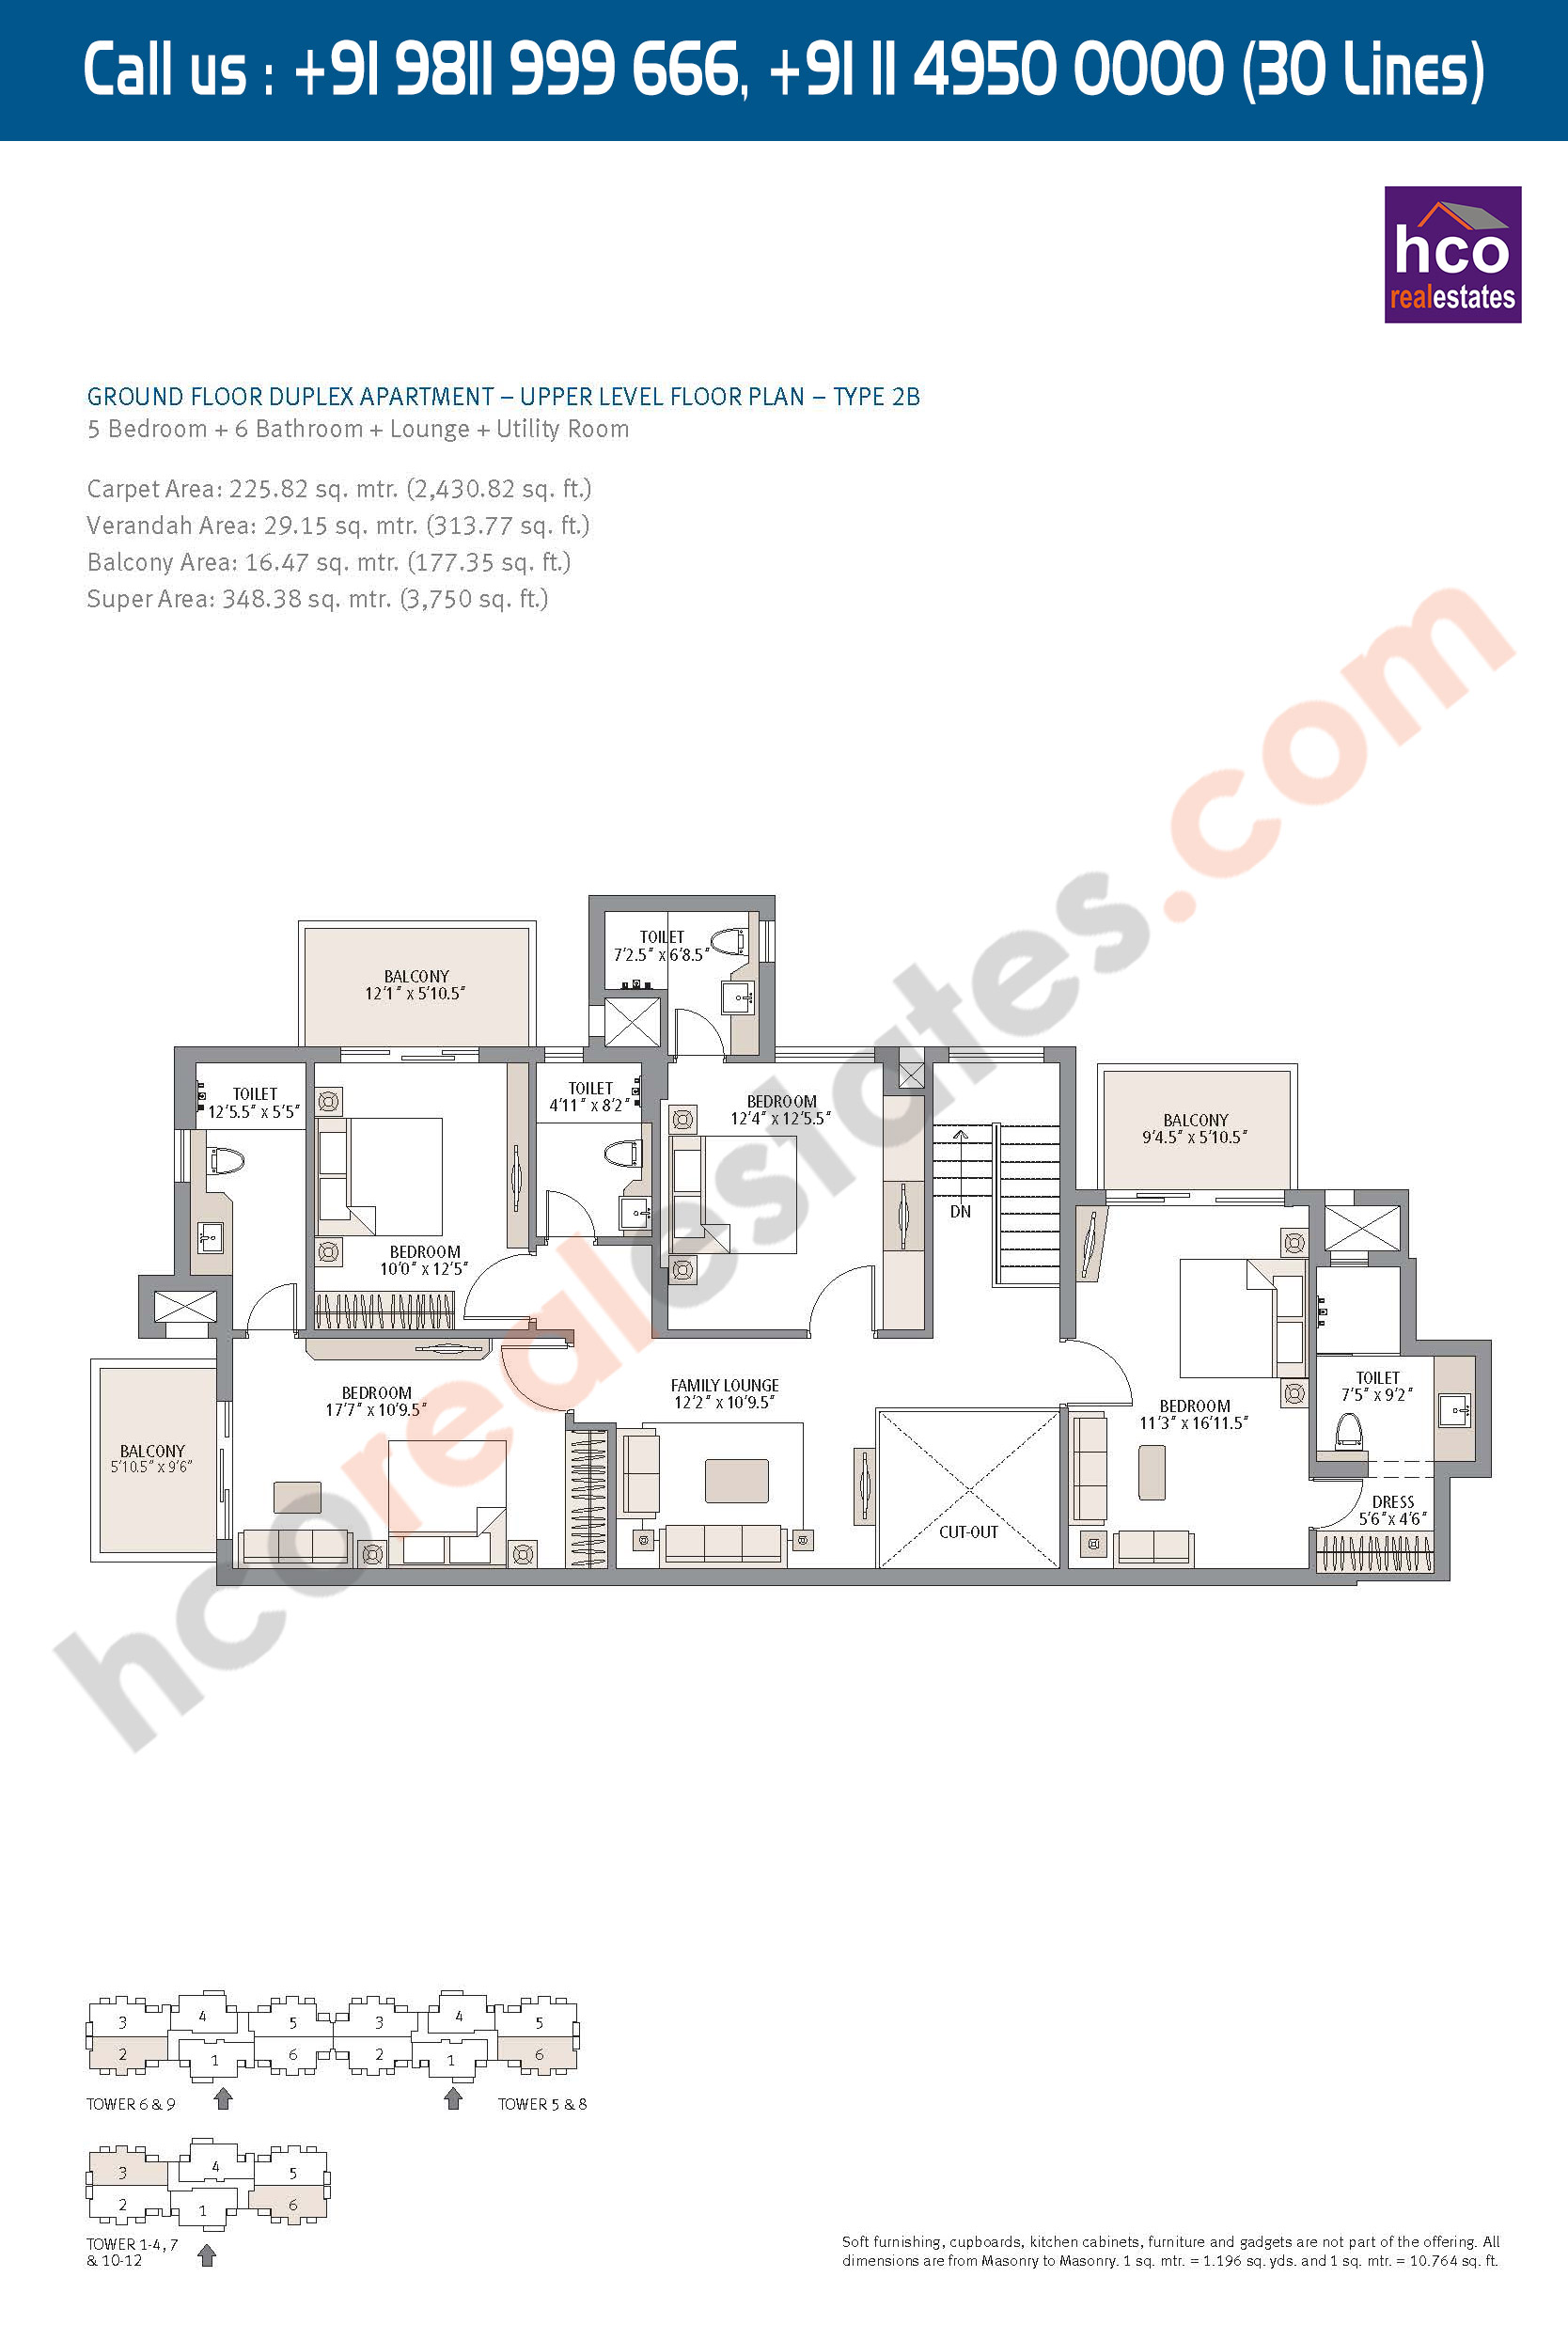 Type - 2B, Upper Level Floor Plan, Ground Floor Duplex, Apartment Carpet Area : 2430 Sq. Ft